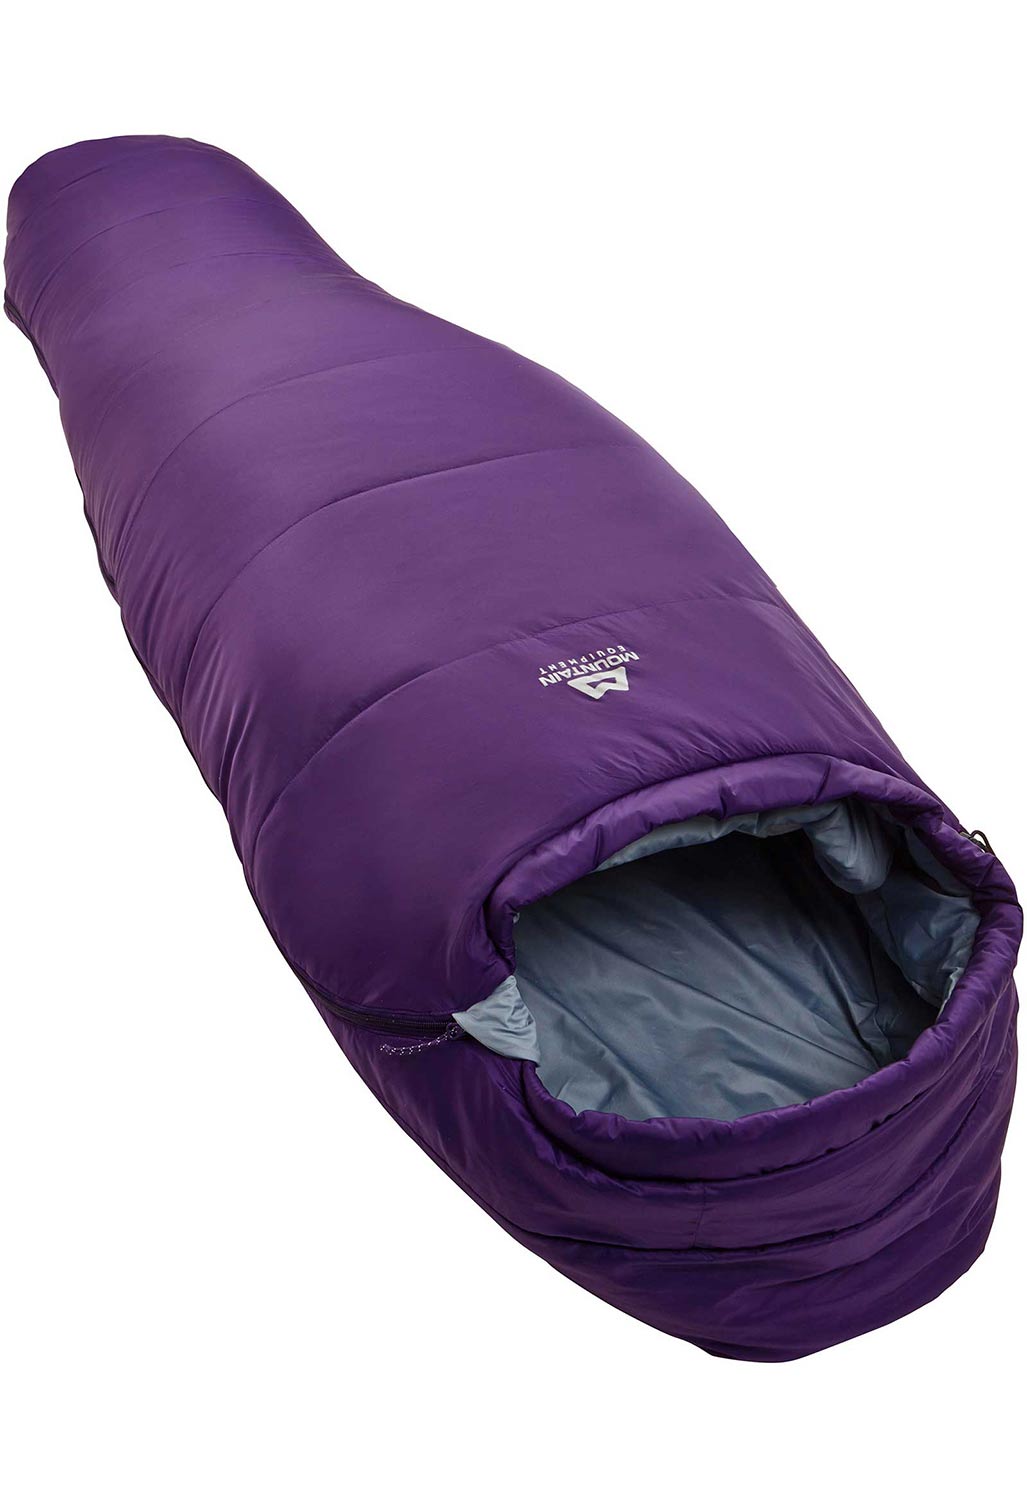 Mountain Equipment Lunar II Women's Sleeping Bag - Tyrian Purple